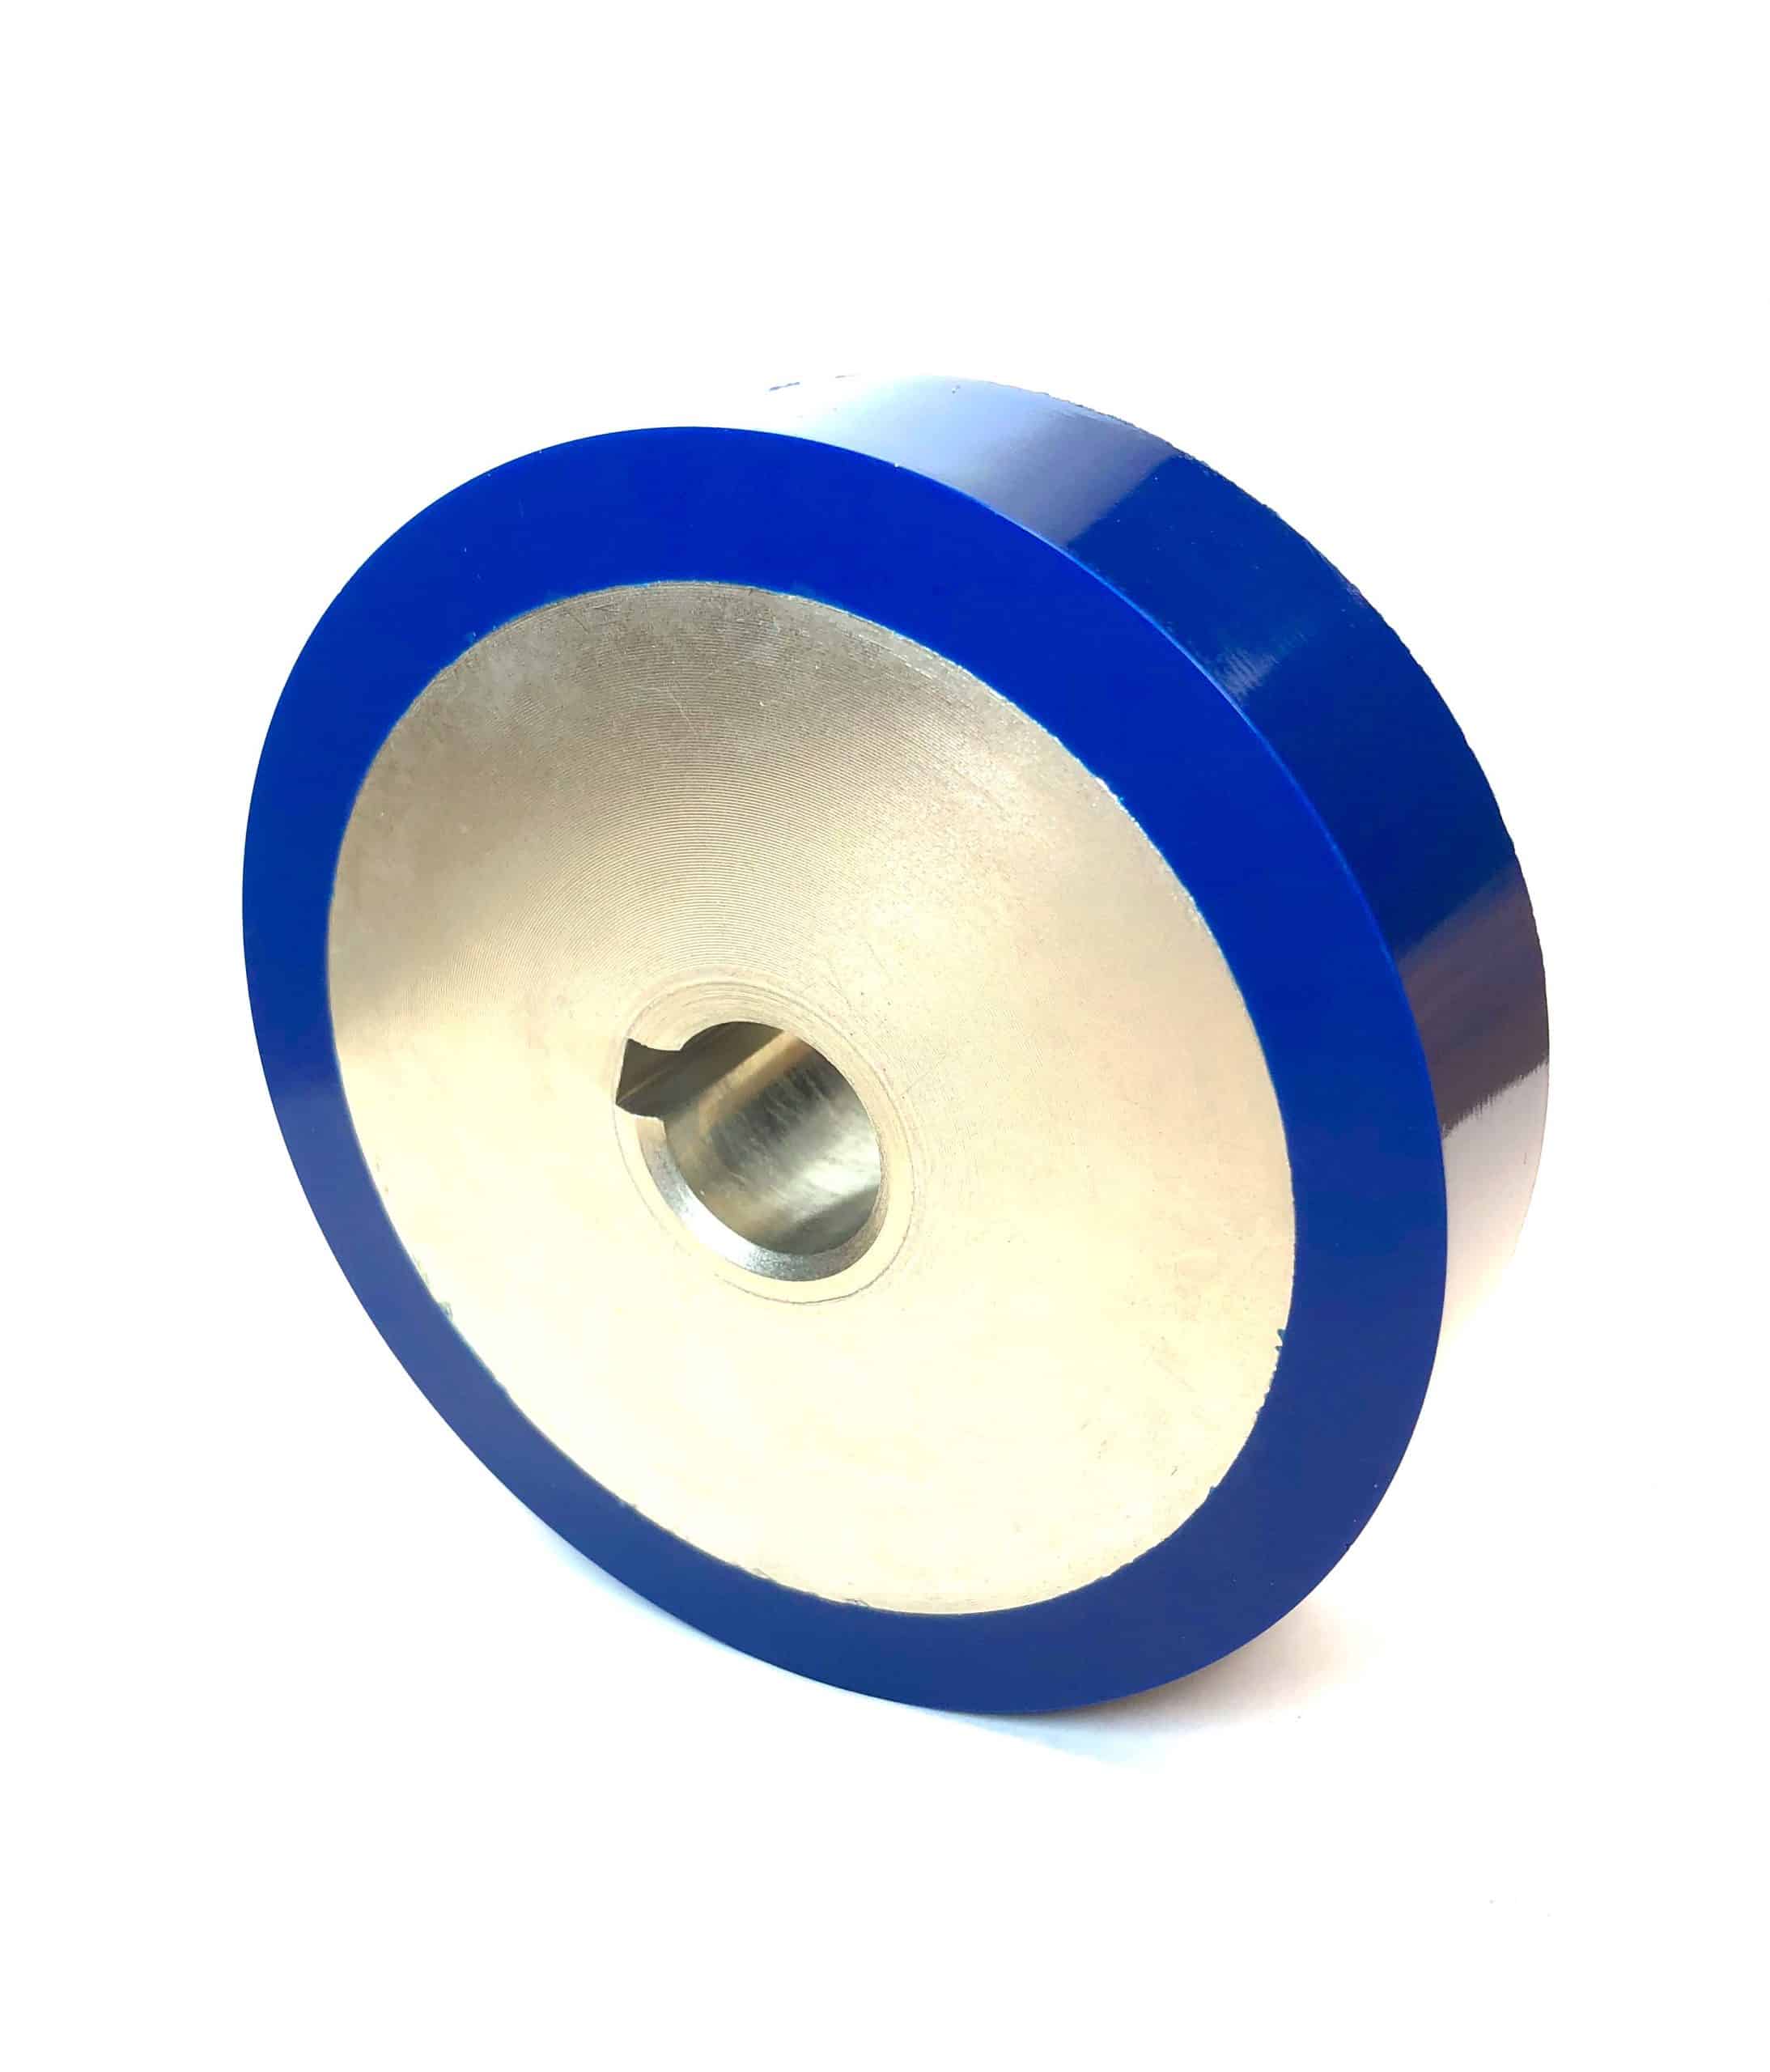 Blue polyurethane roller with key way.